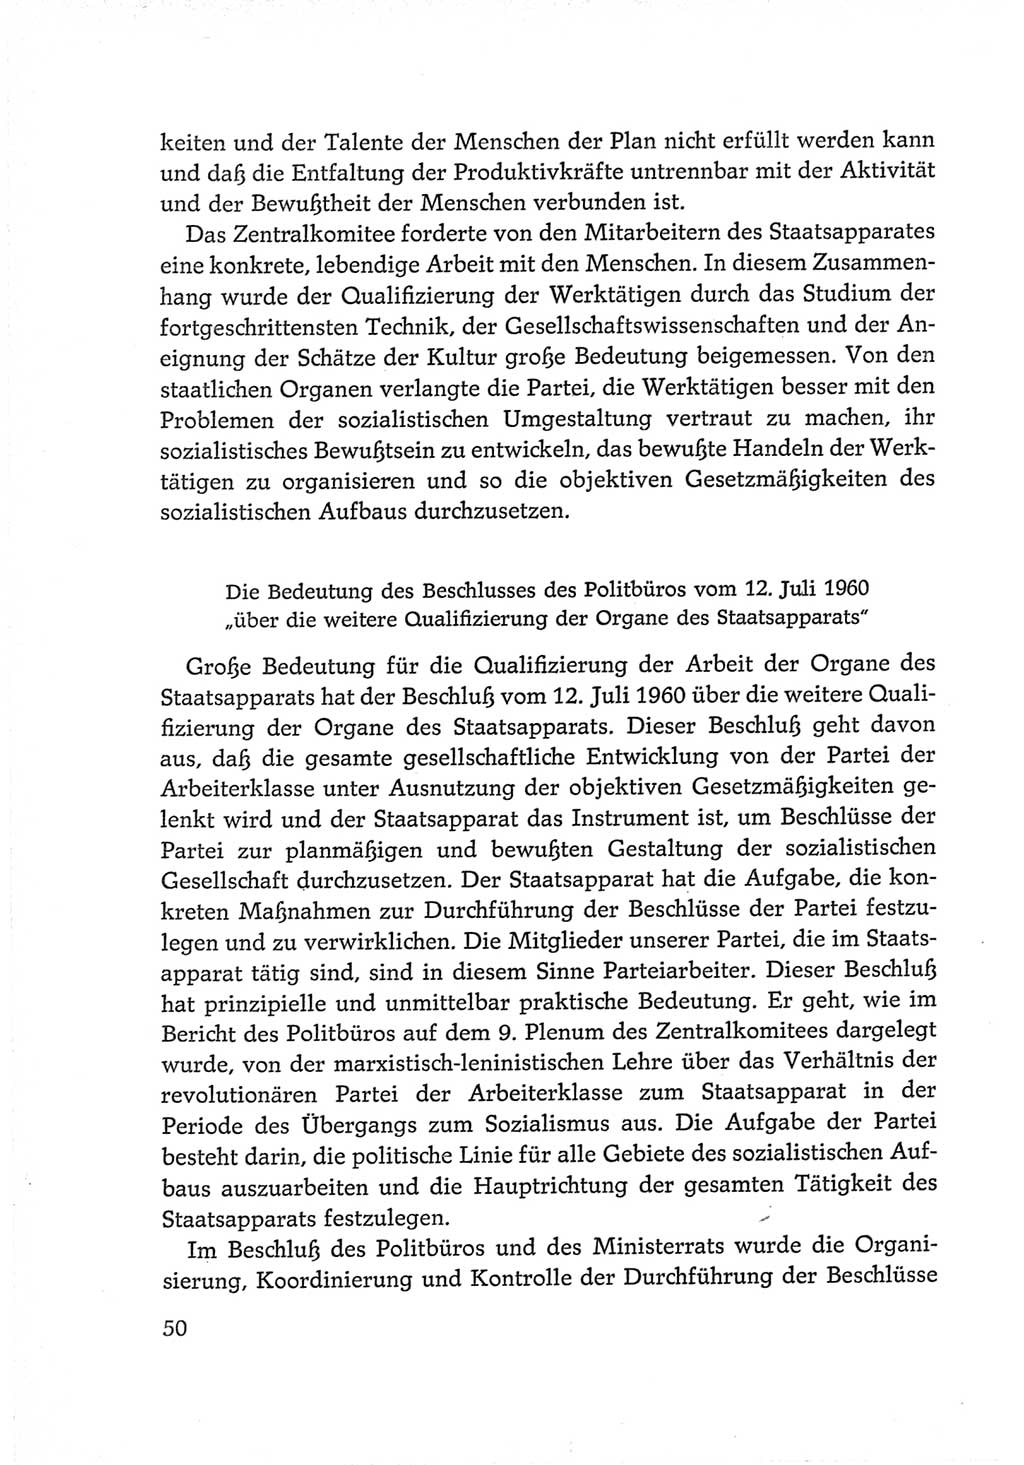 Protokoll der Verhandlungen des Ⅵ. Parteitages der Sozialistischen Einheitspartei Deutschlands (SED) [Deutsche Demokratische Republik (DDR)] 1963, Band Ⅳ, Seite 50 (Prot. Verh. Ⅵ. PT SED DDR 1963, Bd. Ⅳ, S. 50)